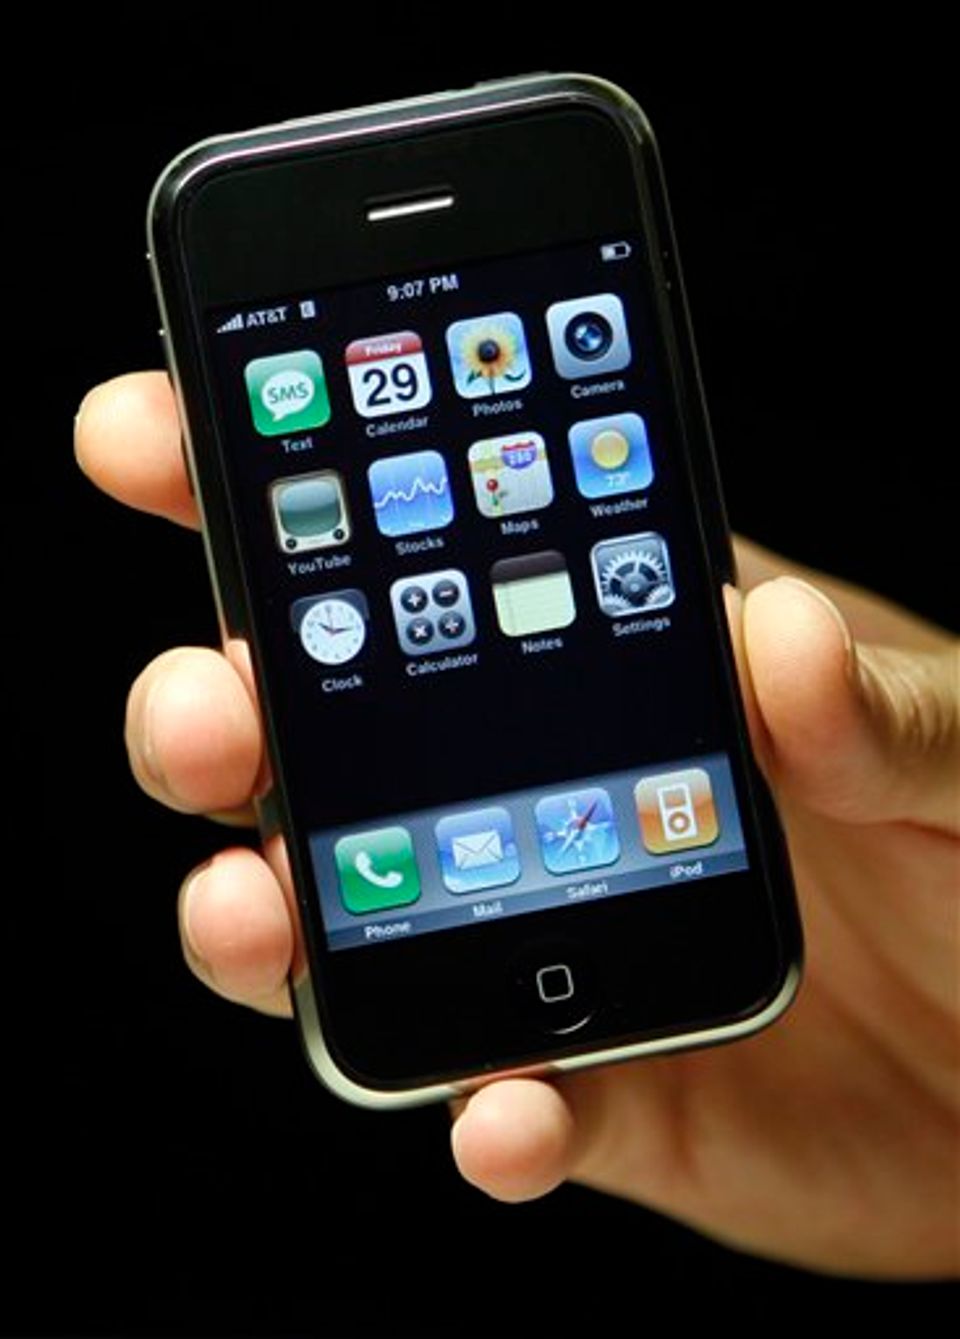 iPhone recall rumors swirl